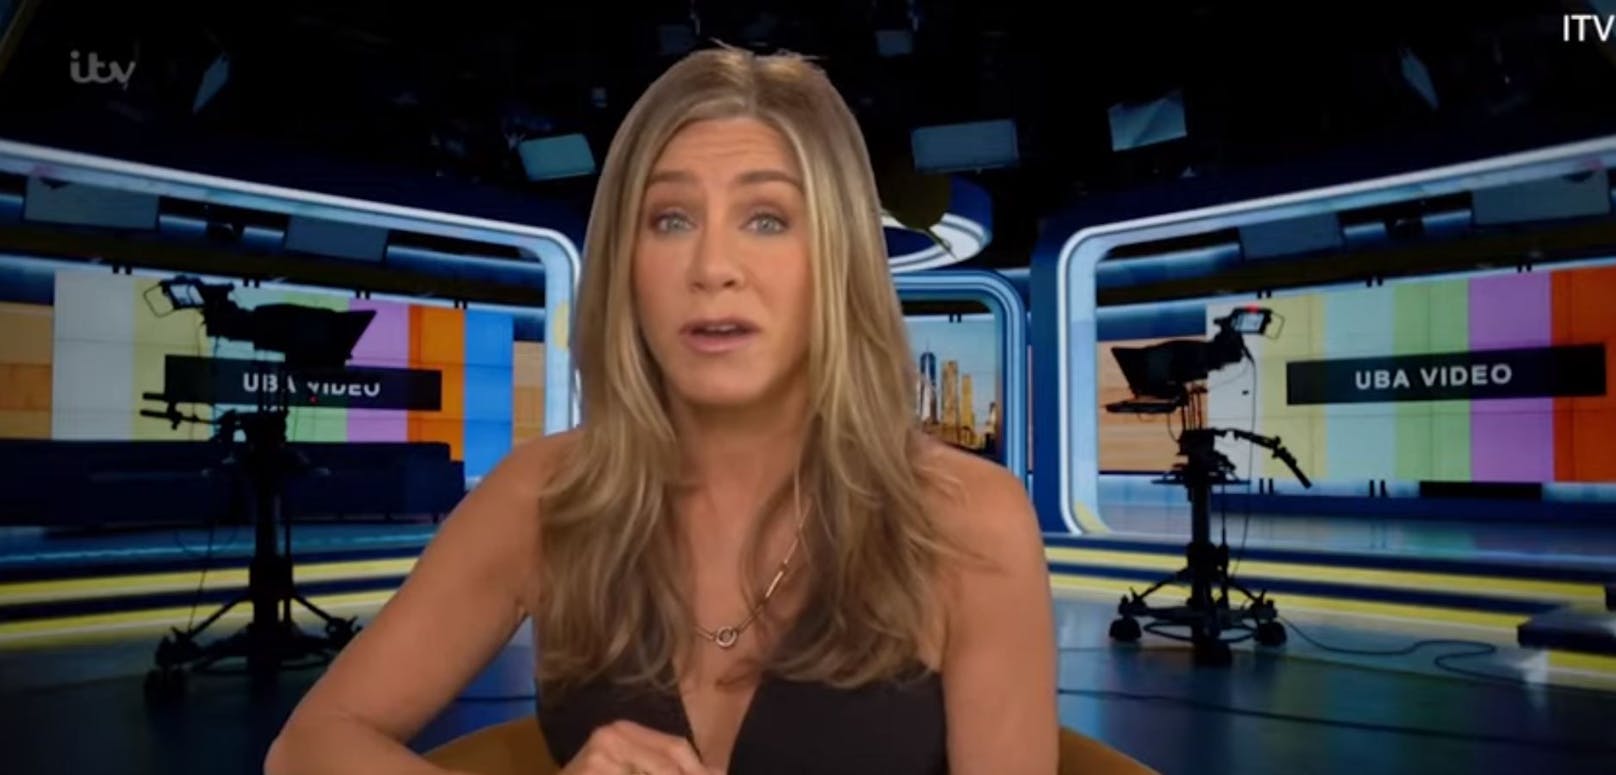 "Nutte?" Jennifer Aniston empört über Interview-Frage